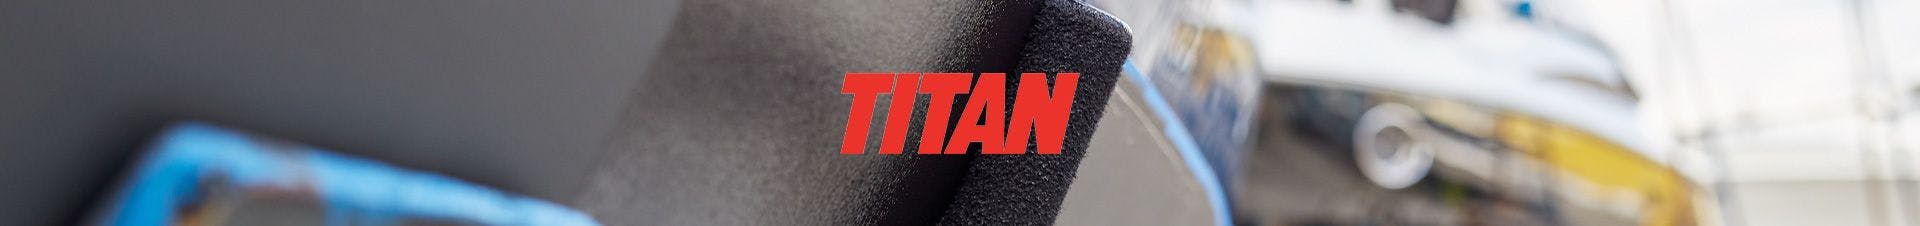 Quiz: Recomendador de Produtos - Titan